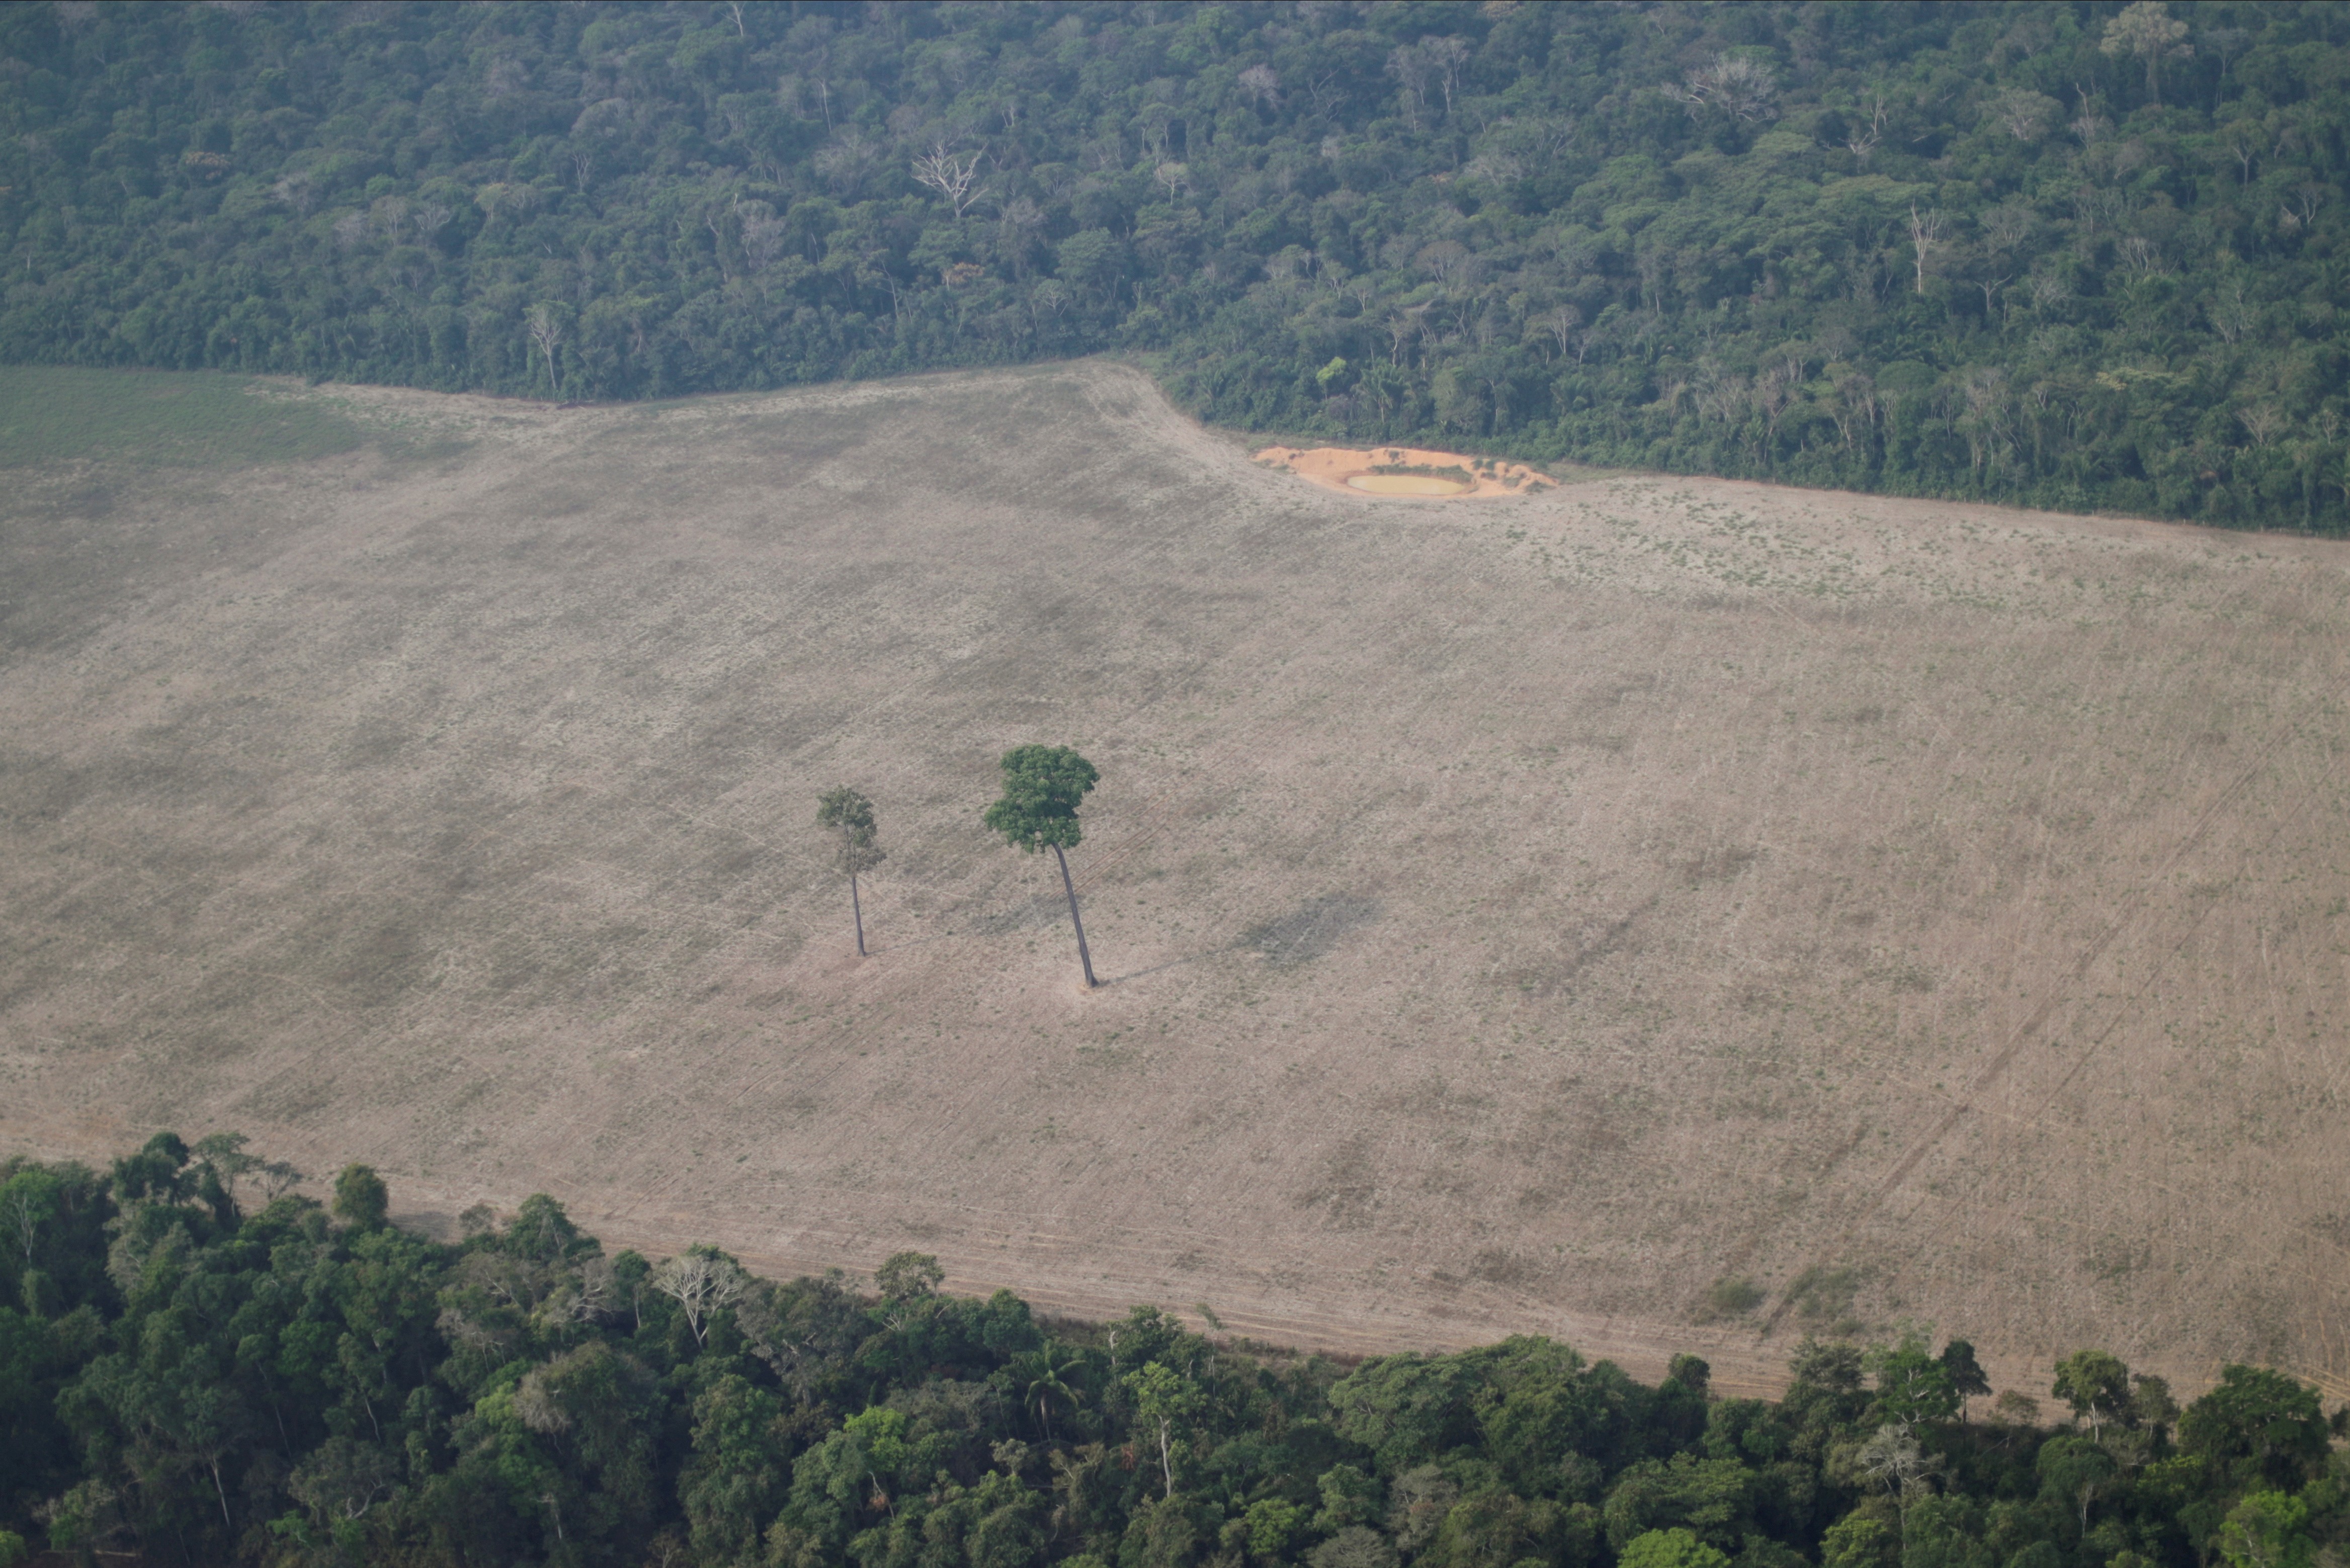 Vista aérea da área desmatada da Floresta Amazônica, em Rondônia (Foto: REUTERS/Ueslei Marcelino)